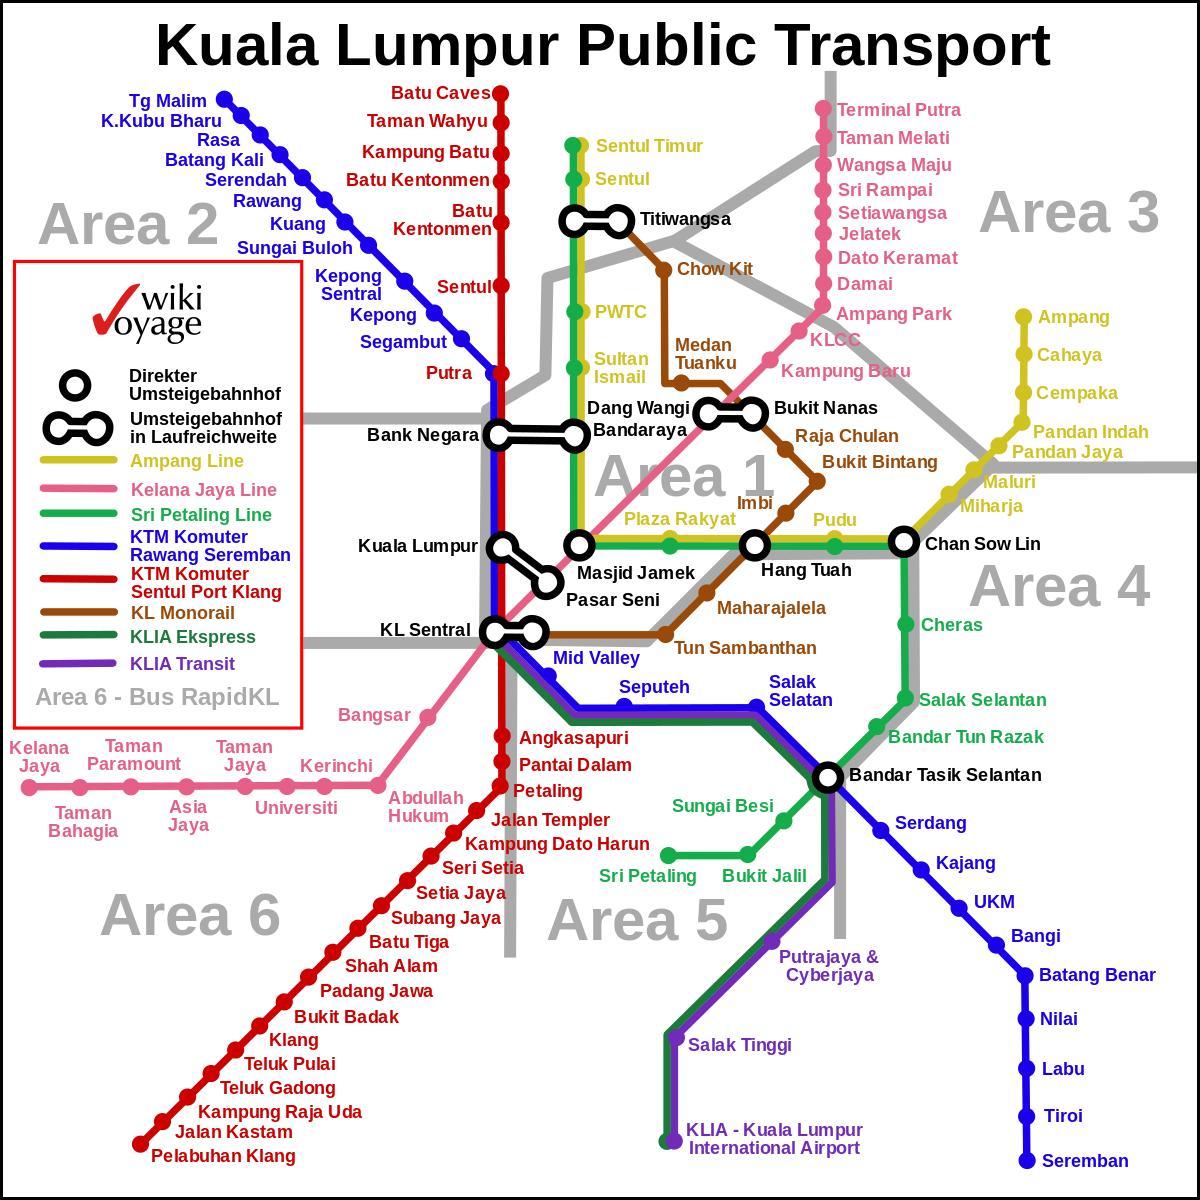 საზოგადოებრივი ტრანსპორტი კუალა ლუმპურის რუკა